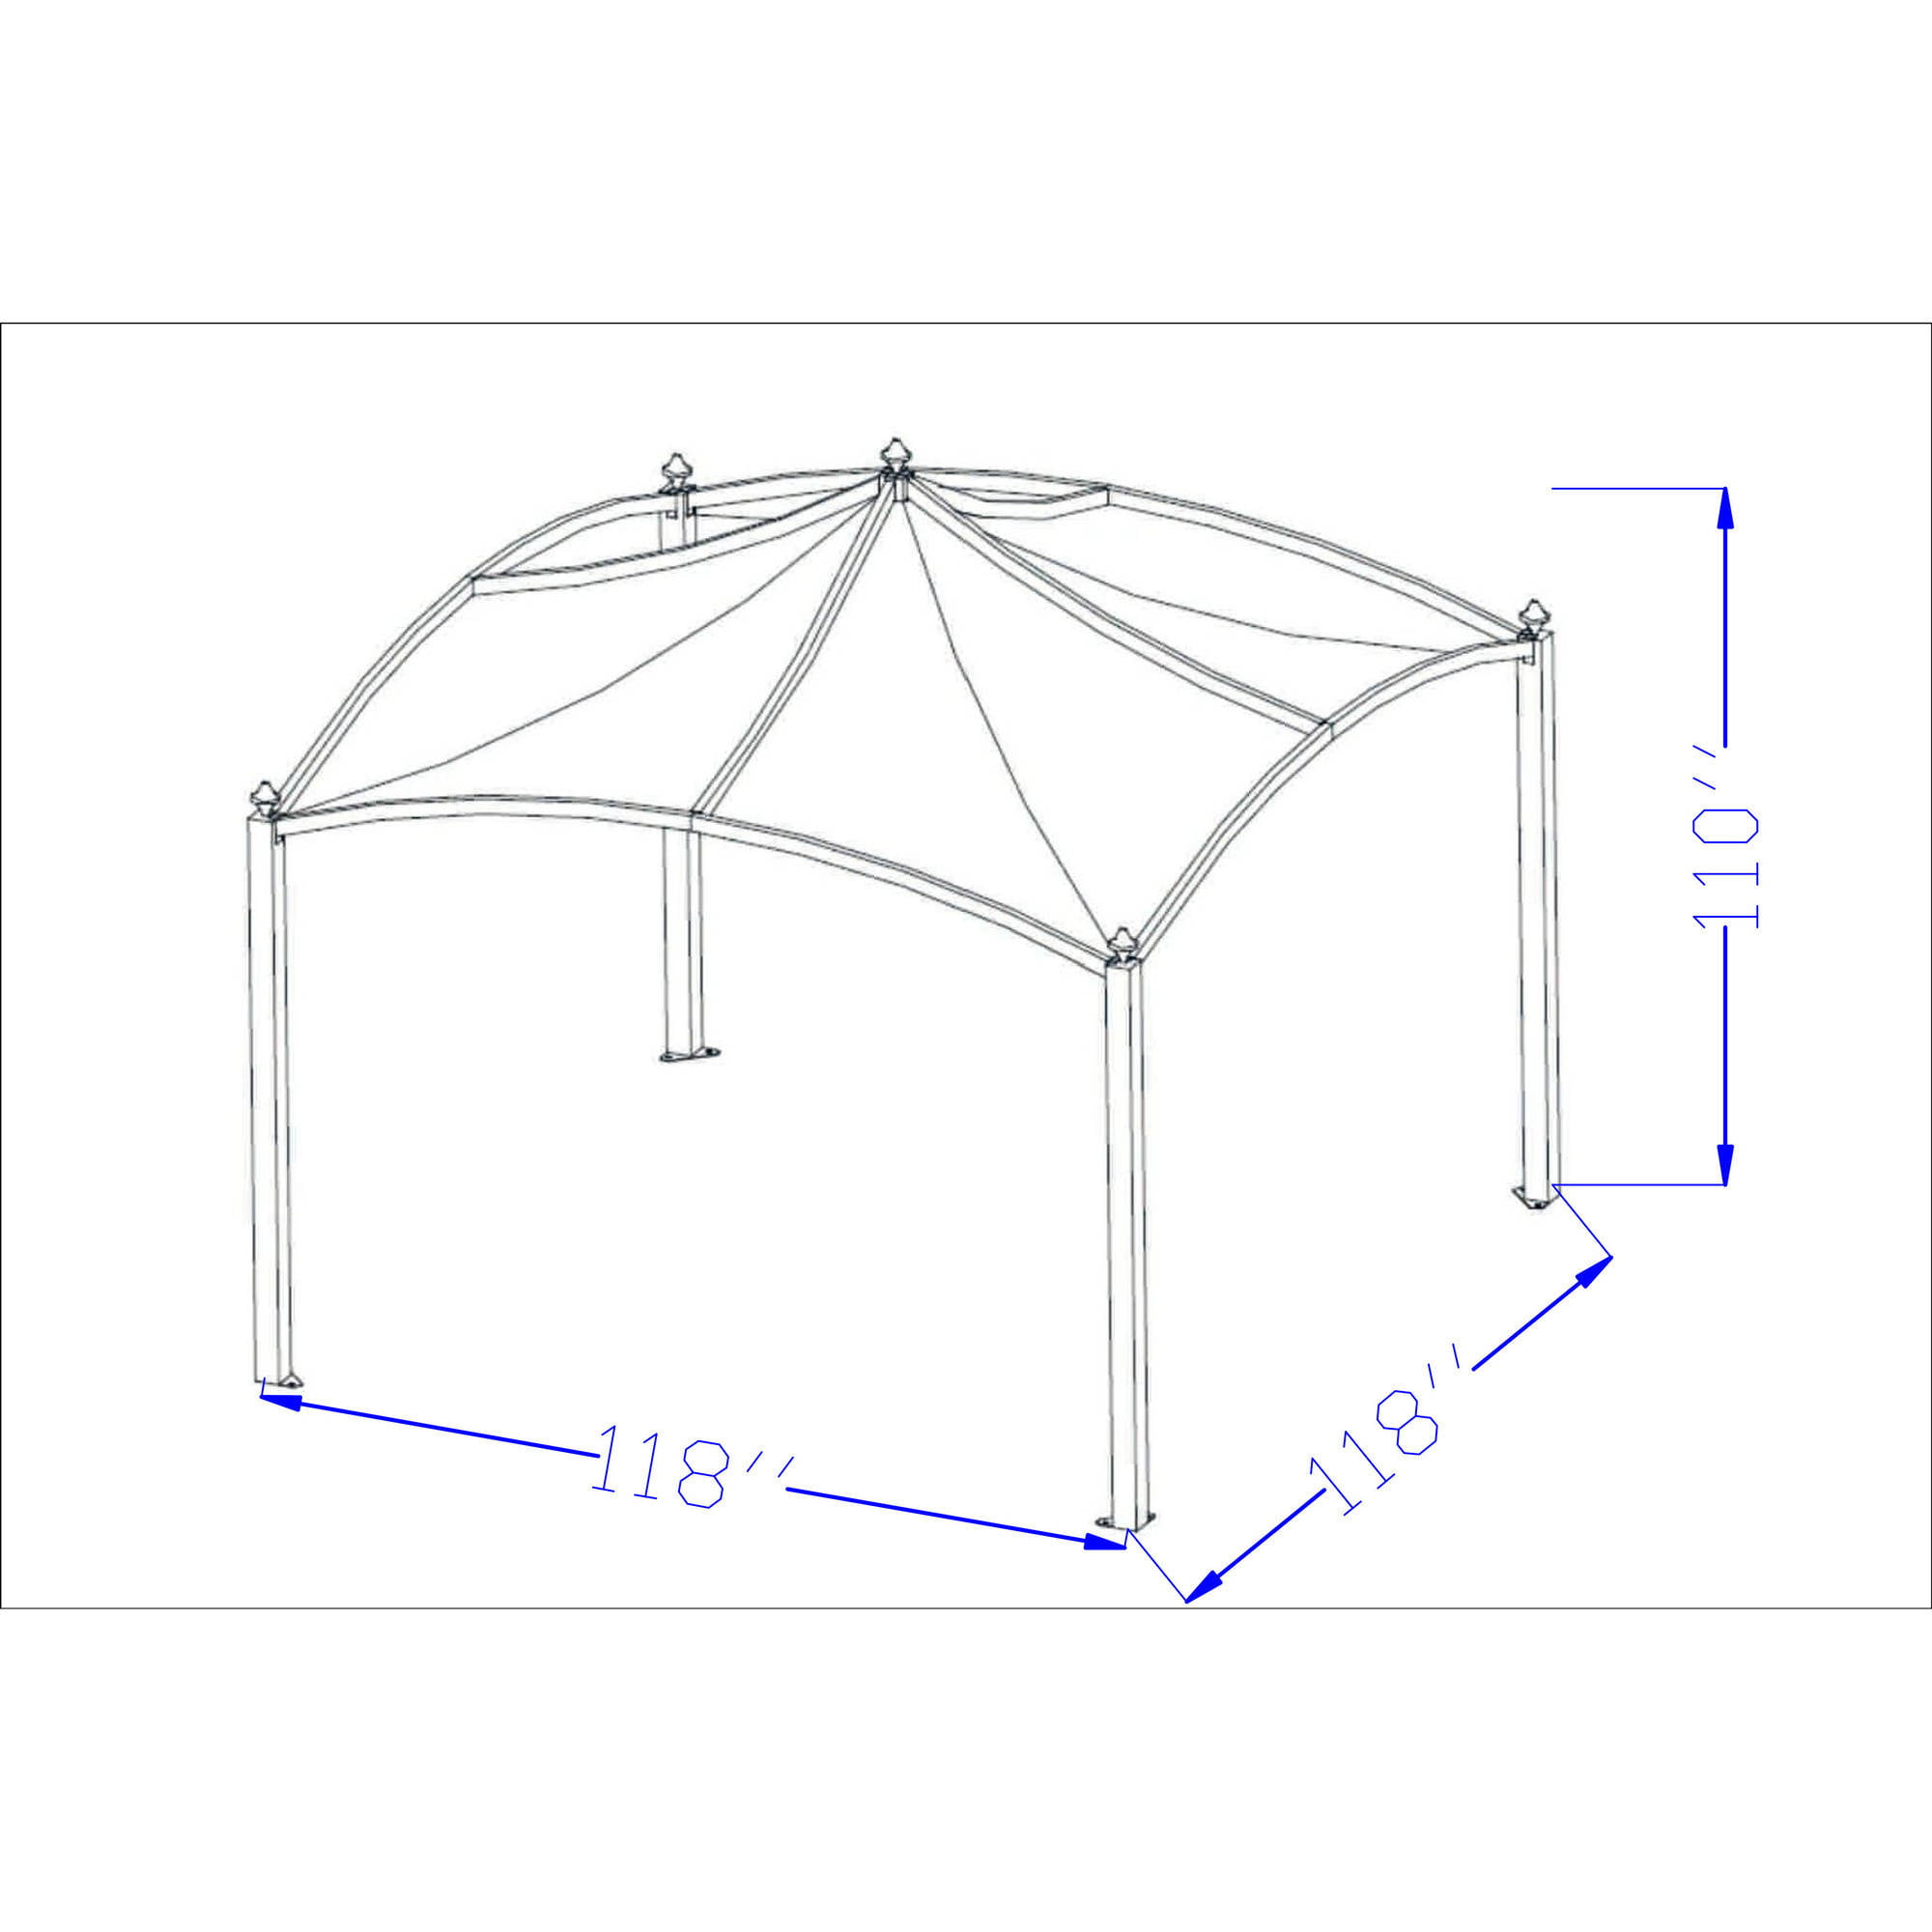 Enviroshade Canopy Instructions & Head Way Gazebo Top Red ...